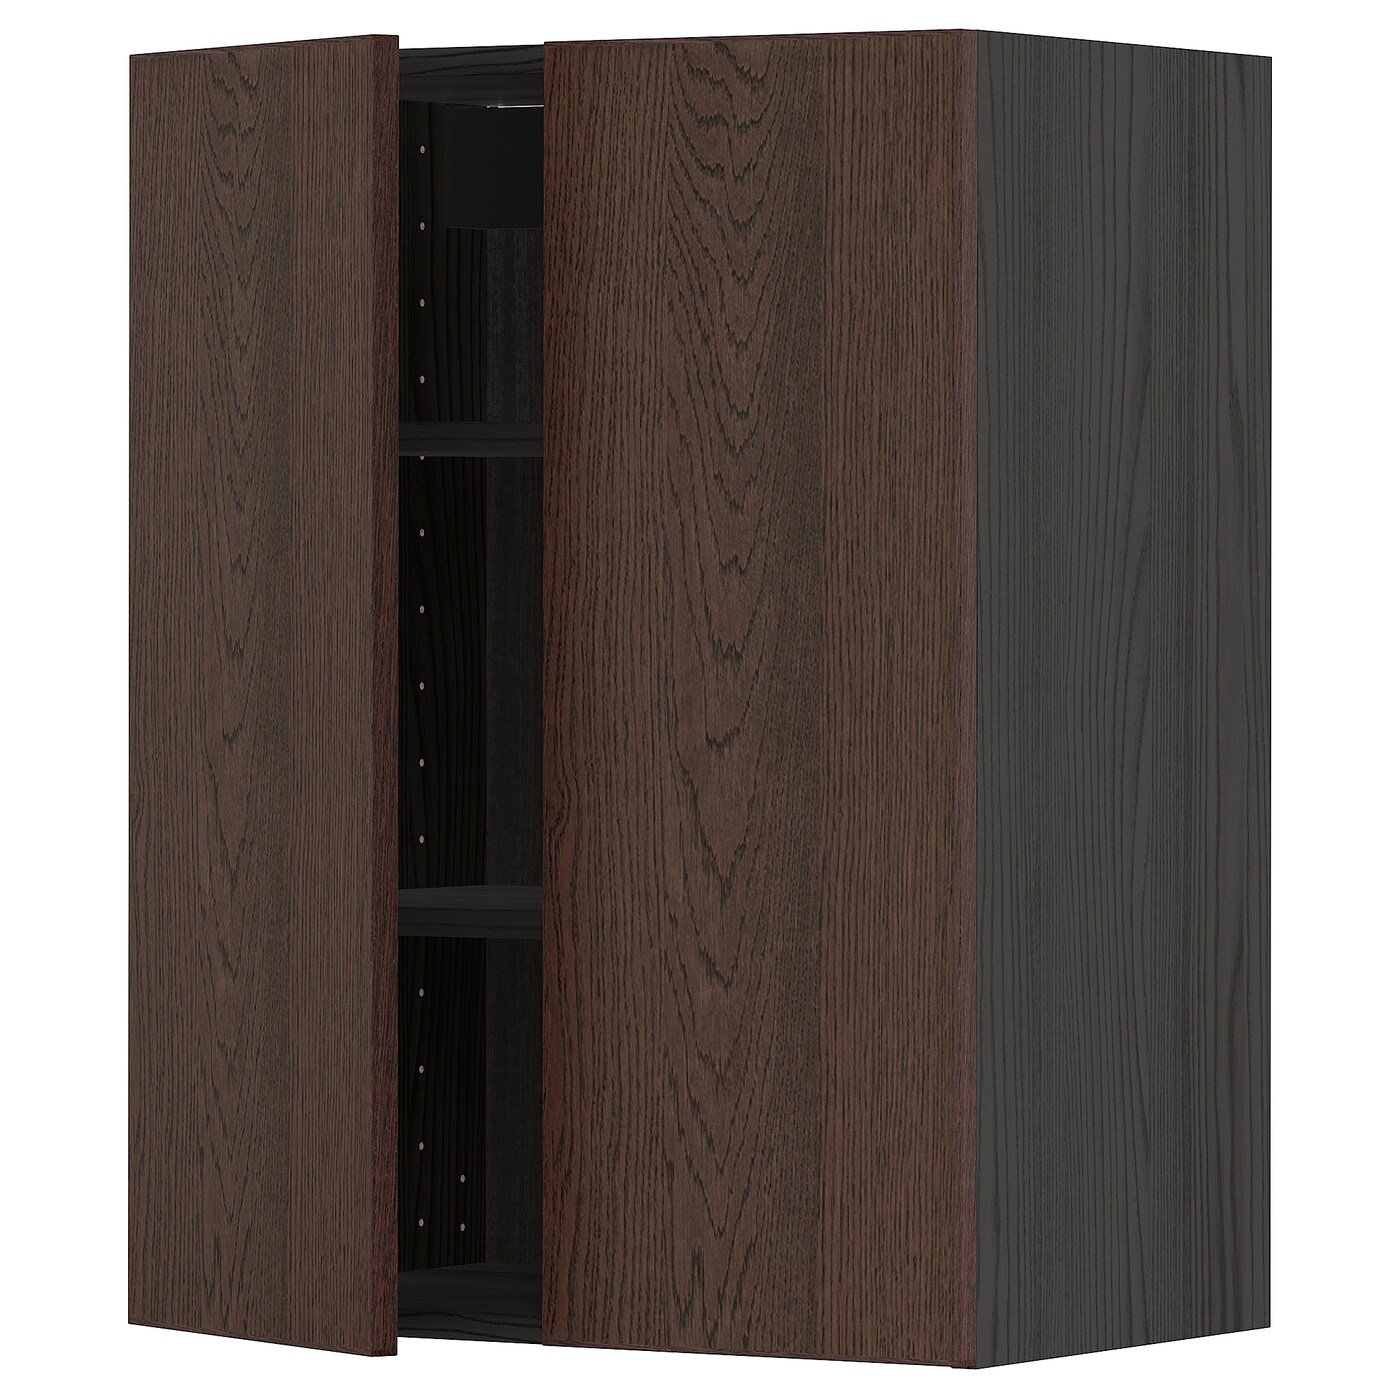 Навесной шкаф с полкой - METOD IKEA/ МЕТОД ИКЕА, 80х60 см,  коричневый /черный